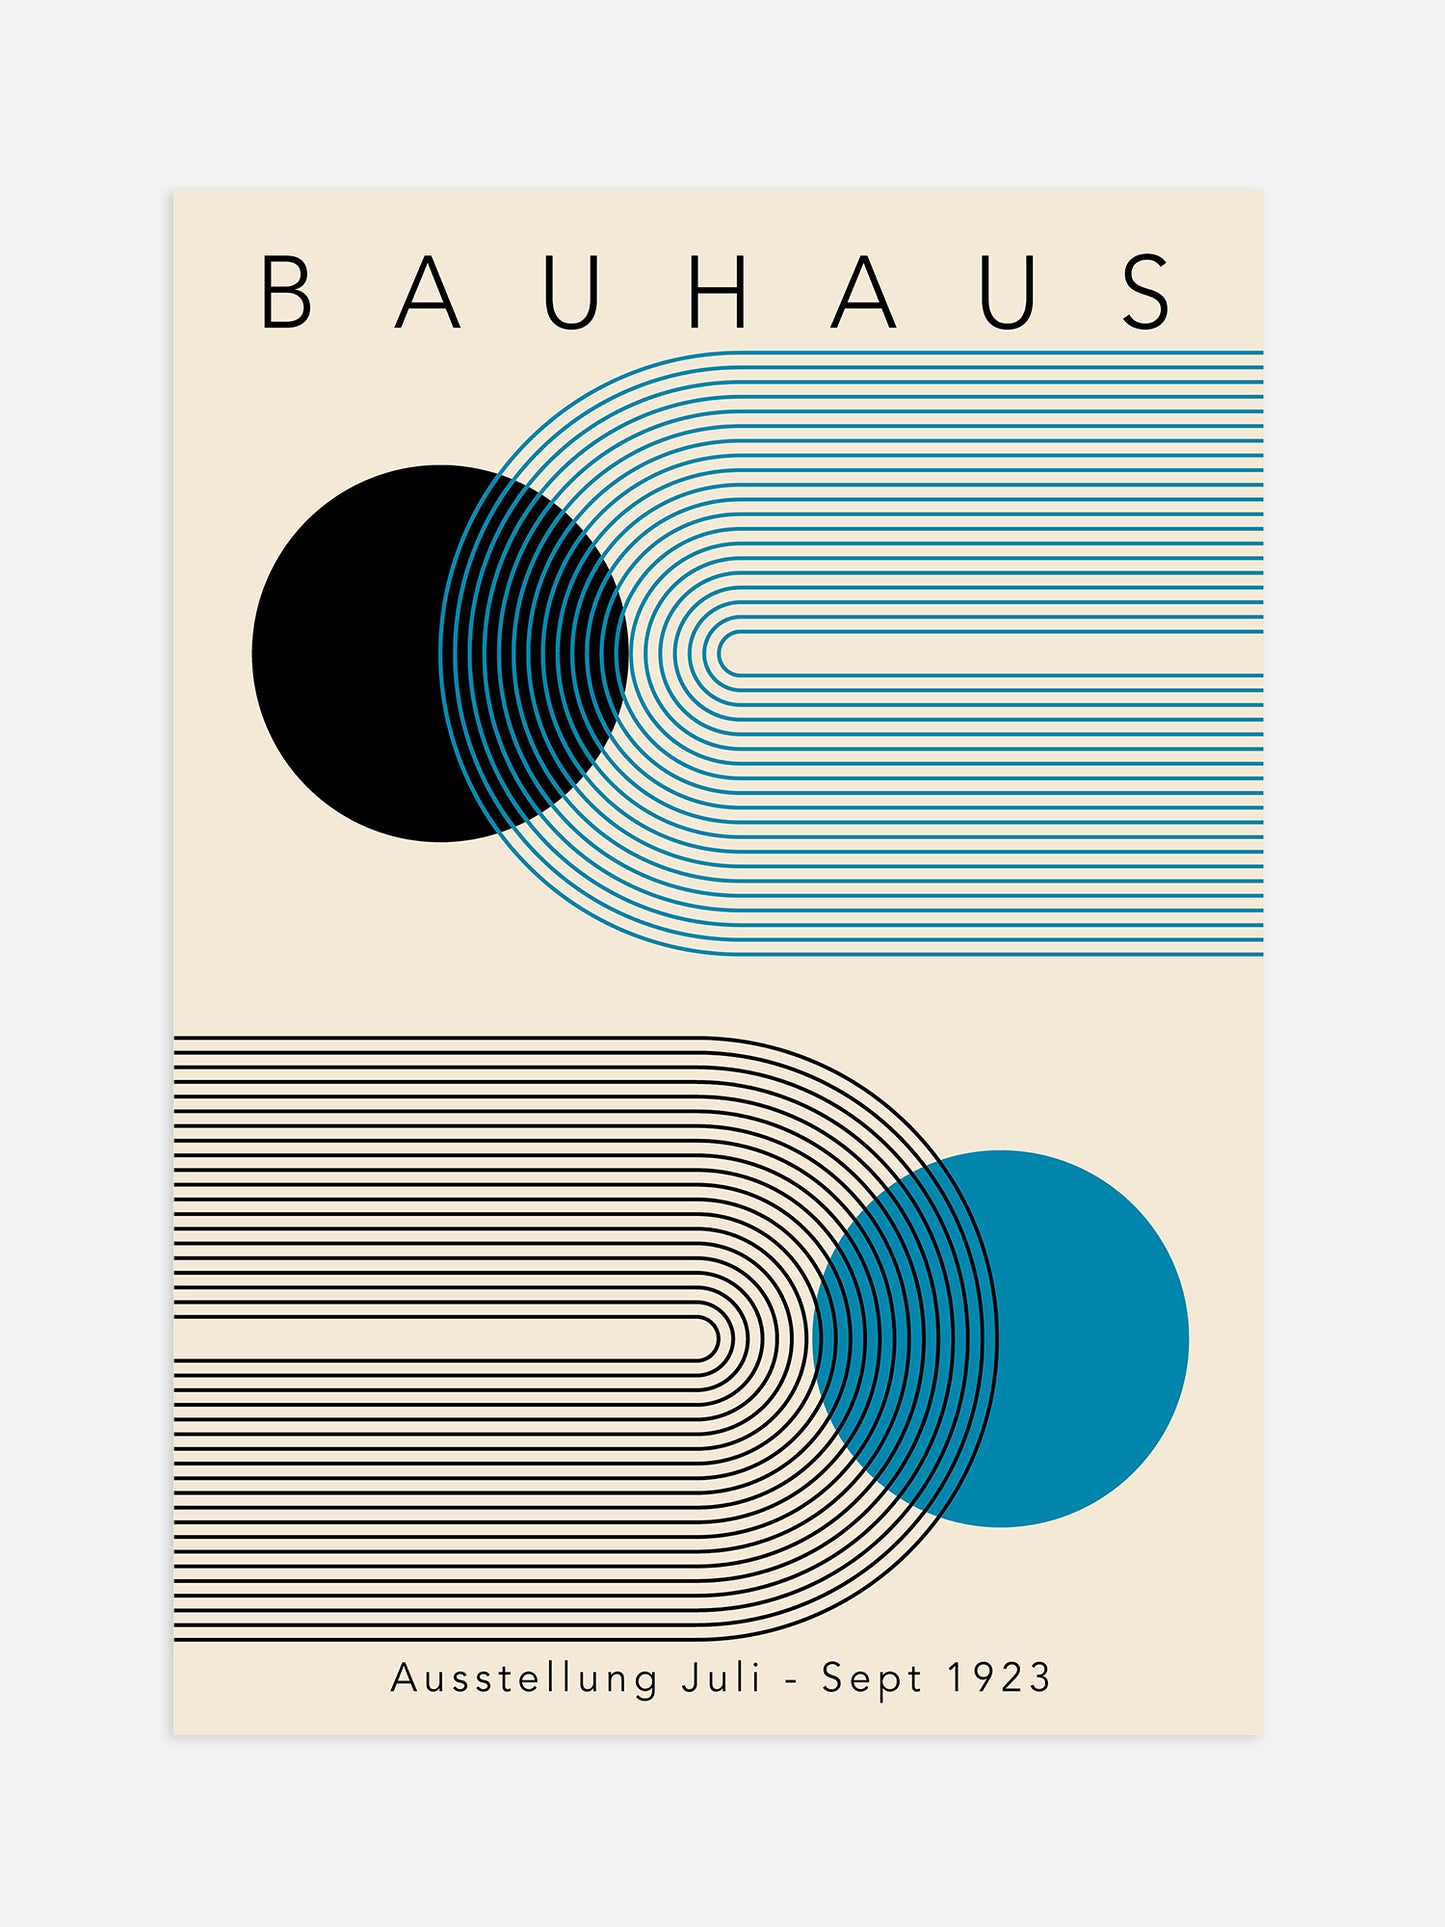 Blue Circle Bauhaus Poster | Digital Download